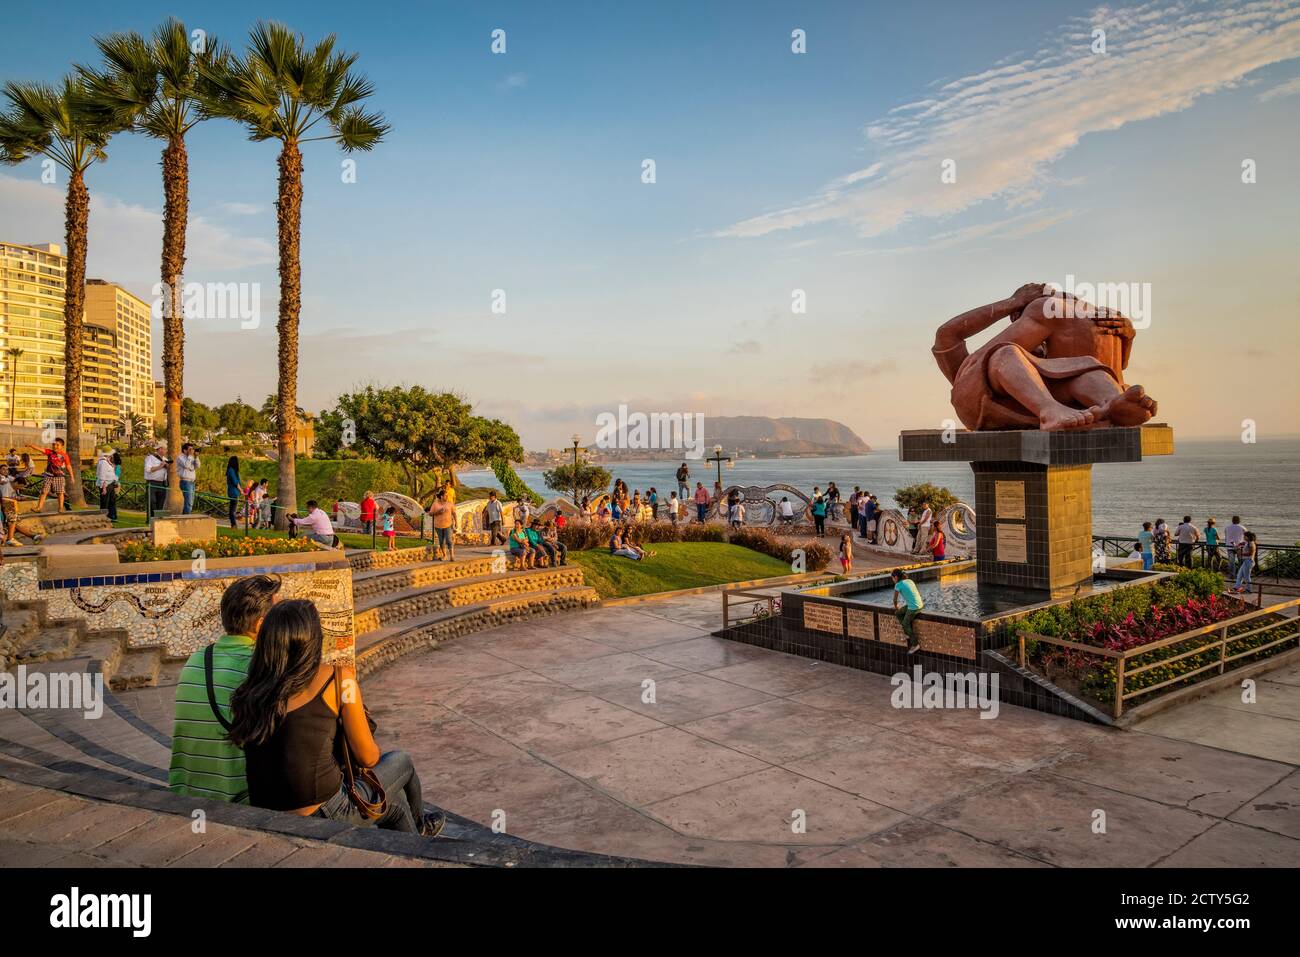 Parque del Amor (Liebespark) auf El Malecón im Stadtteil Miraflores von Lima, Peru, mit Skulptur des umarmenden Paares "Barque del Amor" von Víctor Del Stockfoto